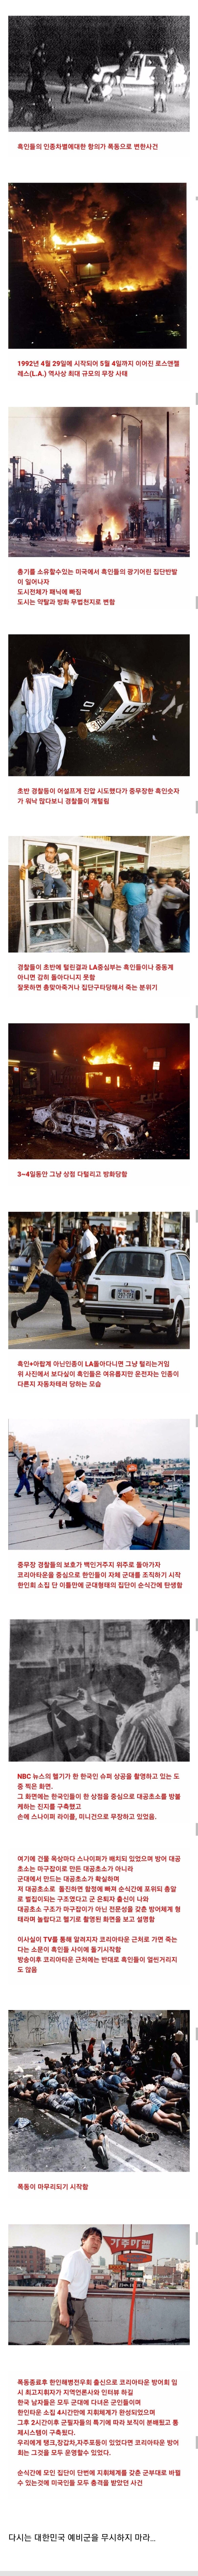 1992년 LA폭동 당시 한국인의 반응.jpg